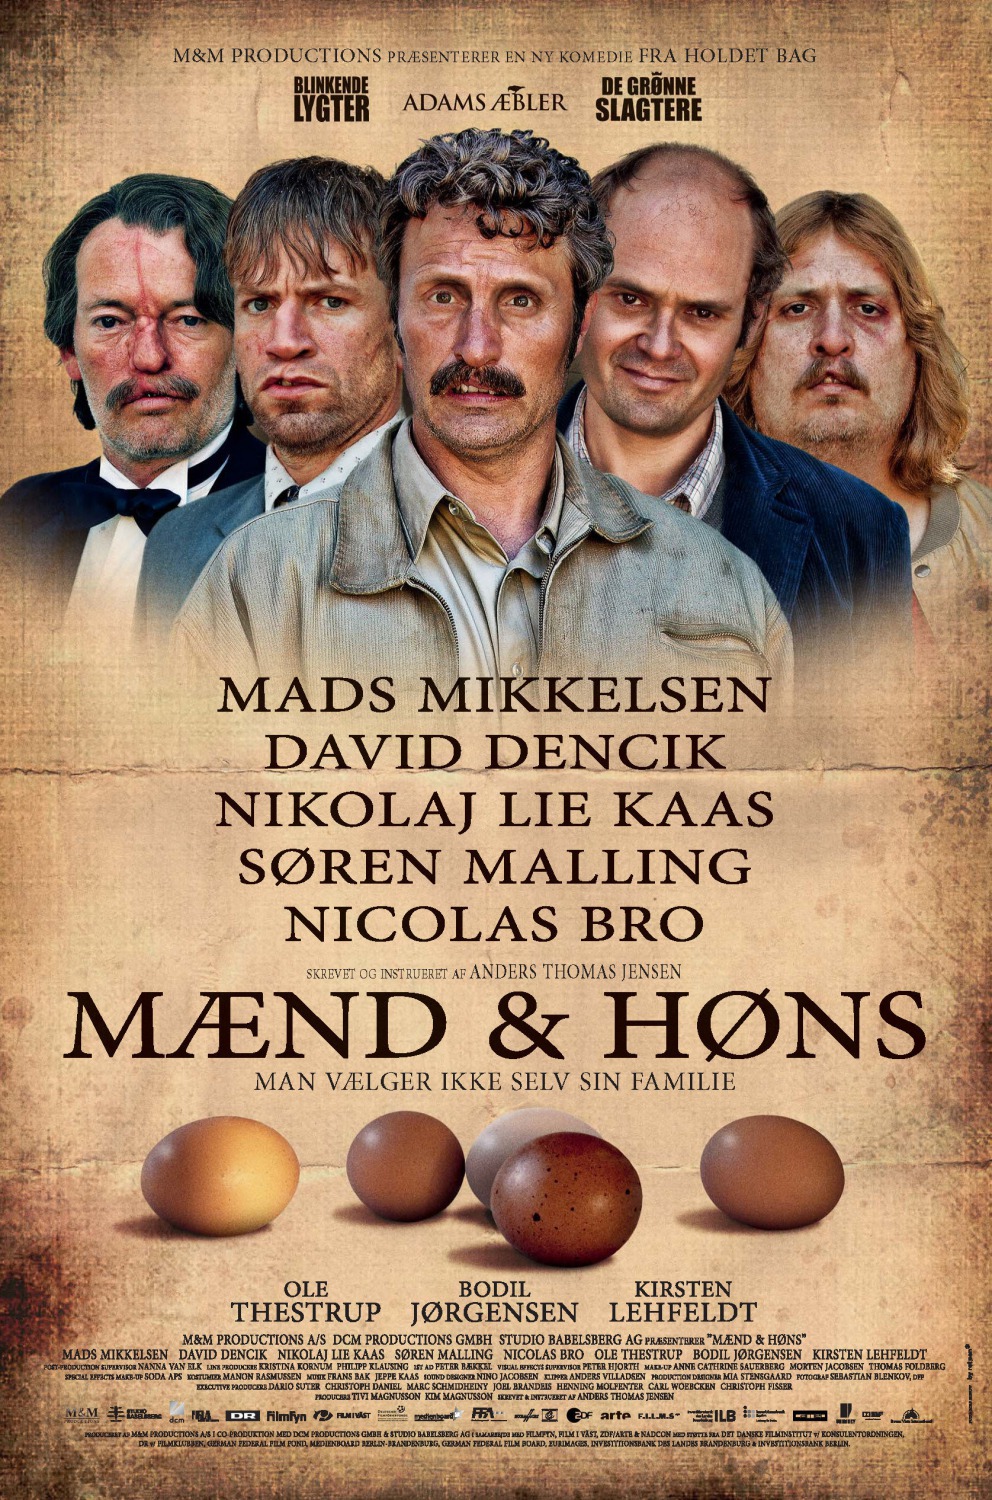 Extra Large Movie Poster Image for Mænd & høns (#1 of 8)